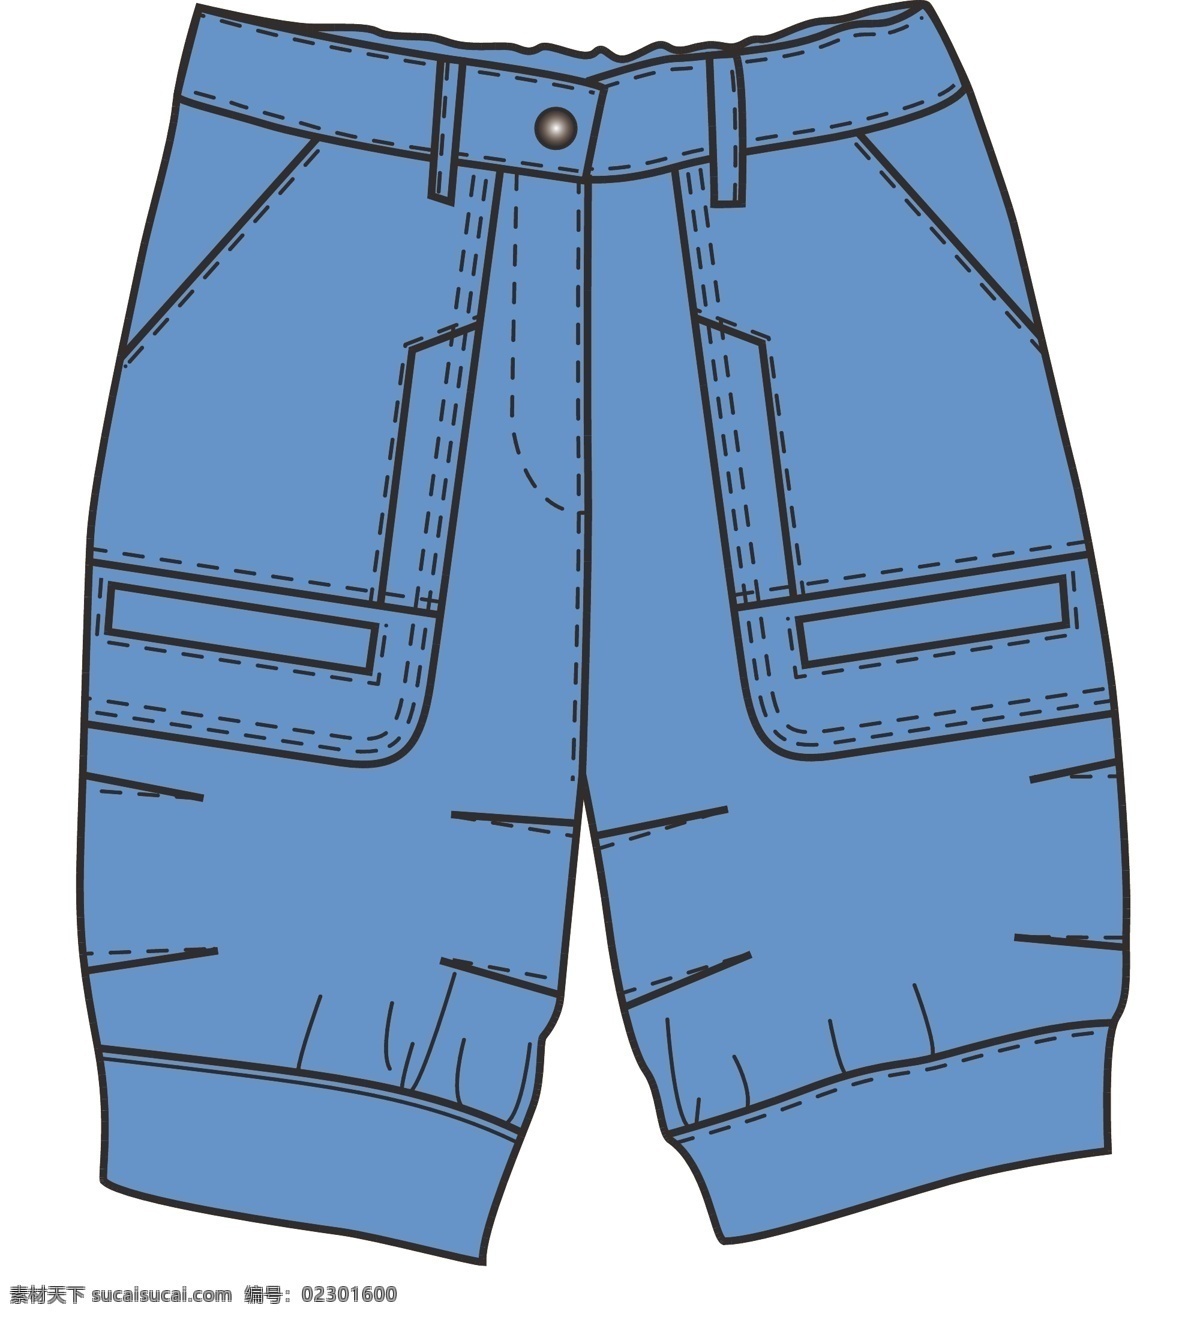 女童 裤子 版 型 服装设计 女童裤子版型 版型 矢量 其他服装素材